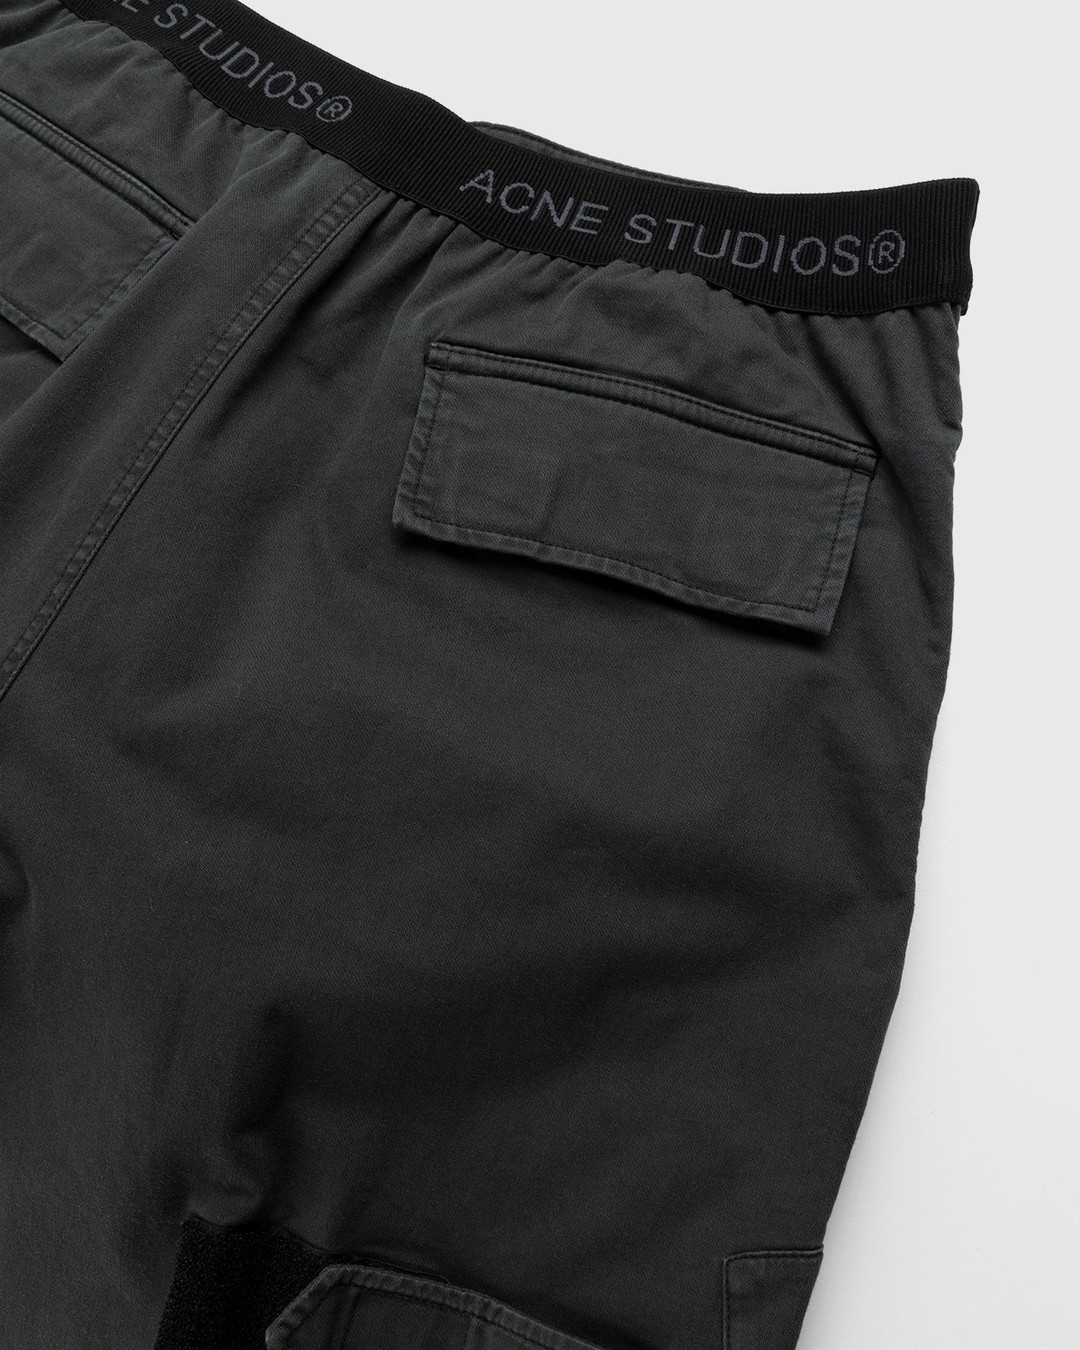 Acne Studios – Chevron Cargo Pants Anthracite Grey - Cargo Pants - Grey - Image 4